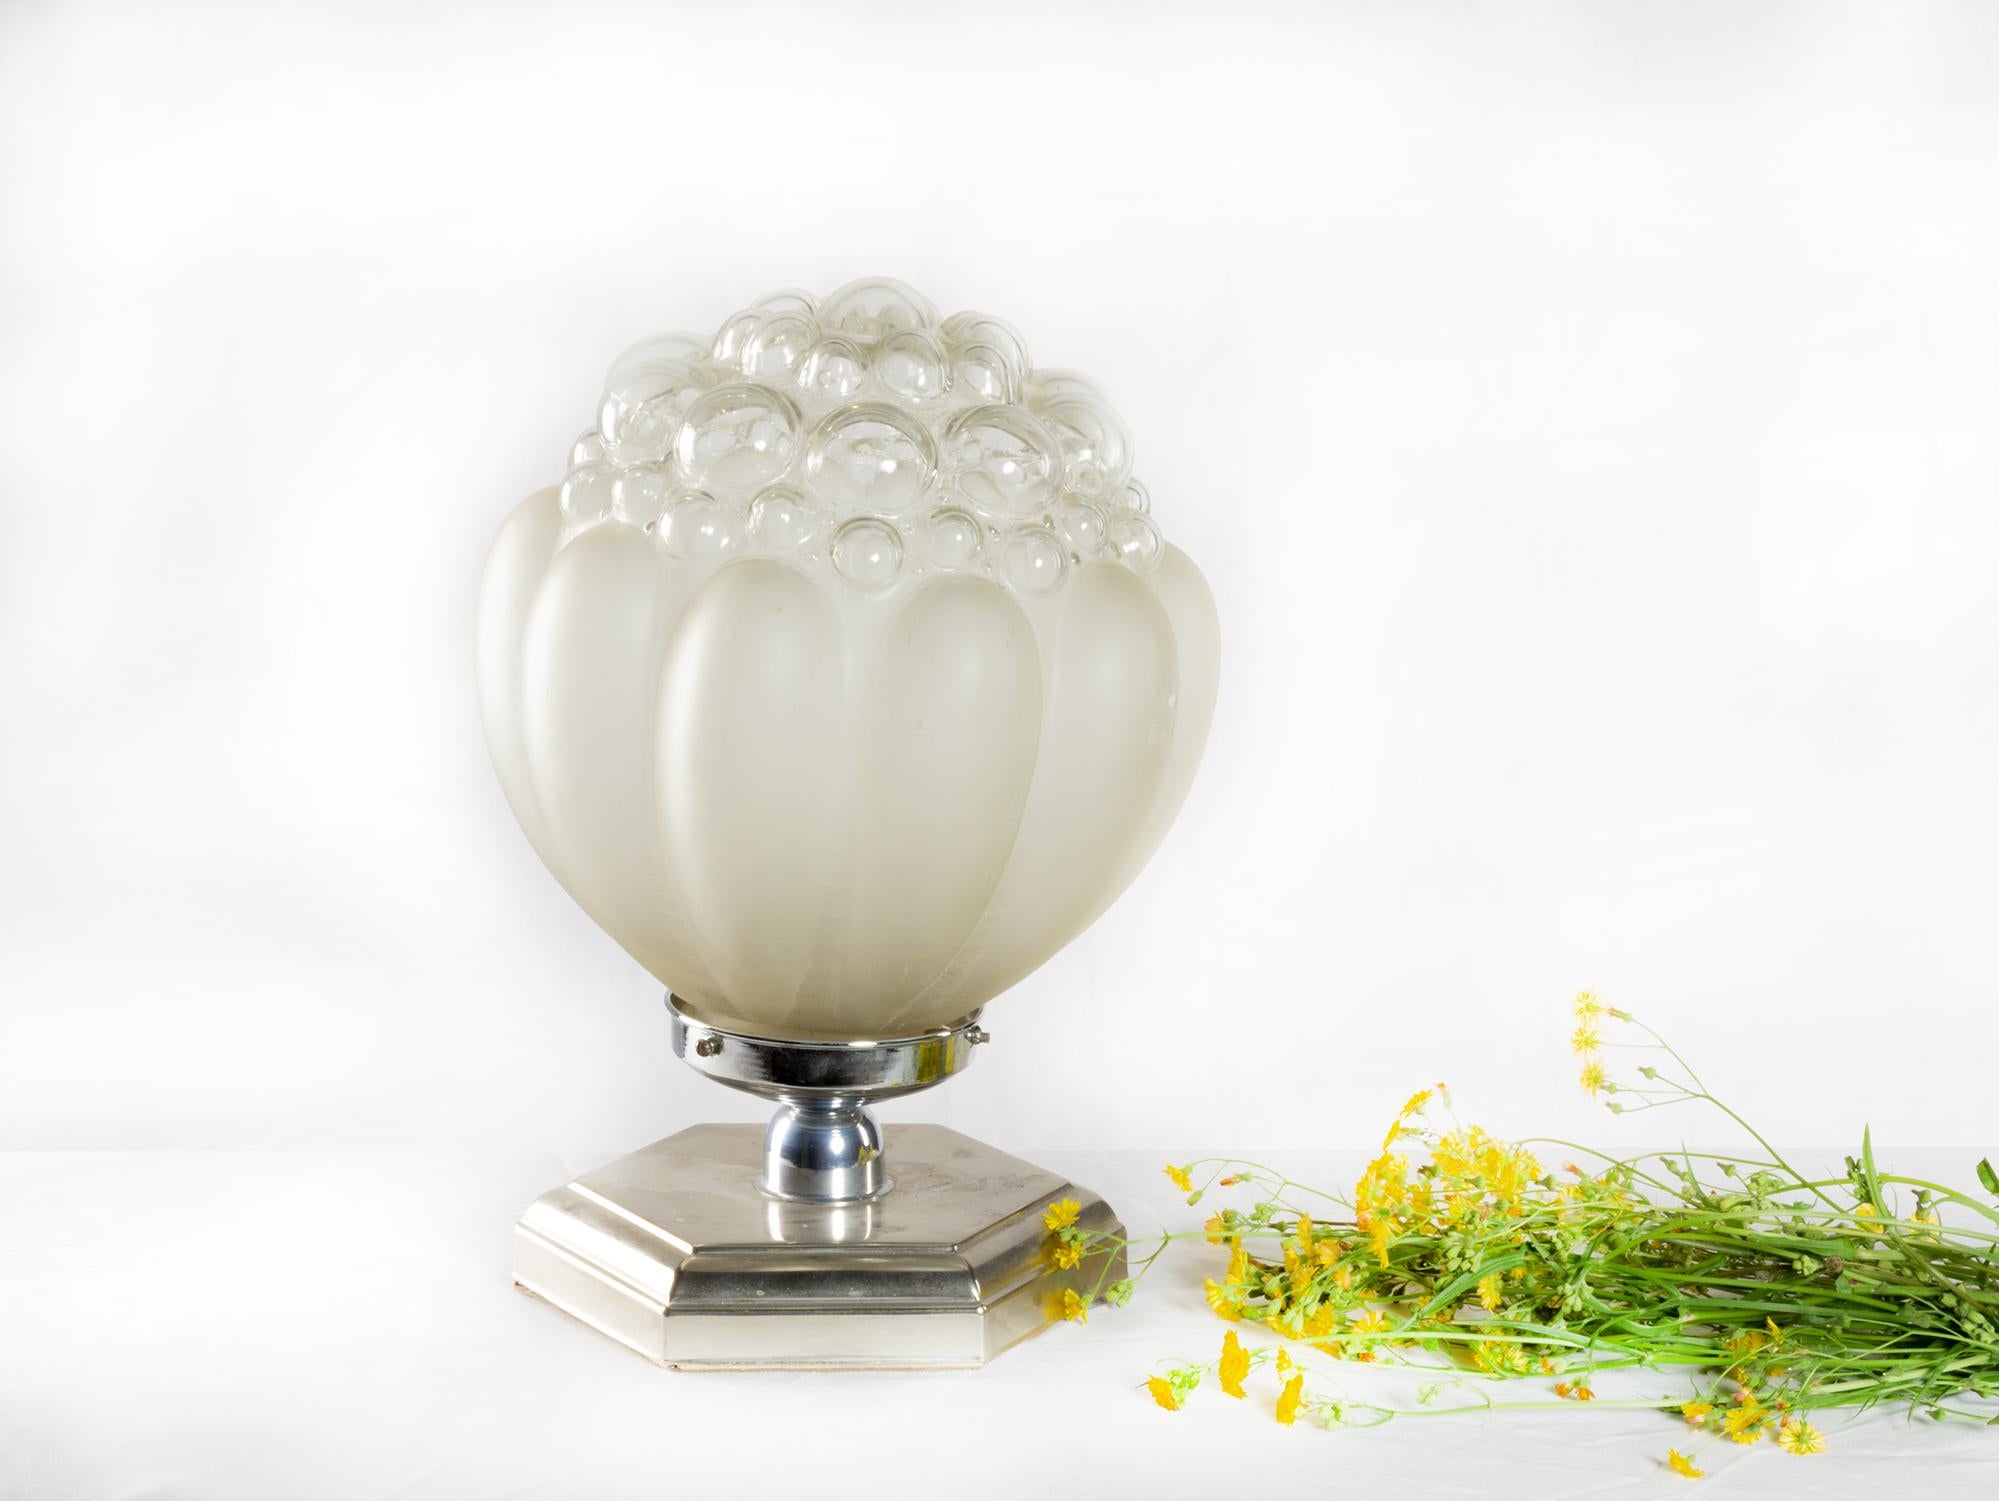 Lampe de table Art déco en nacre chromée, 20e siècle
2340

Lampe de table Art déco en verre soufflé blanc de couleur nacrée et base hexagonale chromée à lumière diffuse.
Récemment revu et fonctionnel.